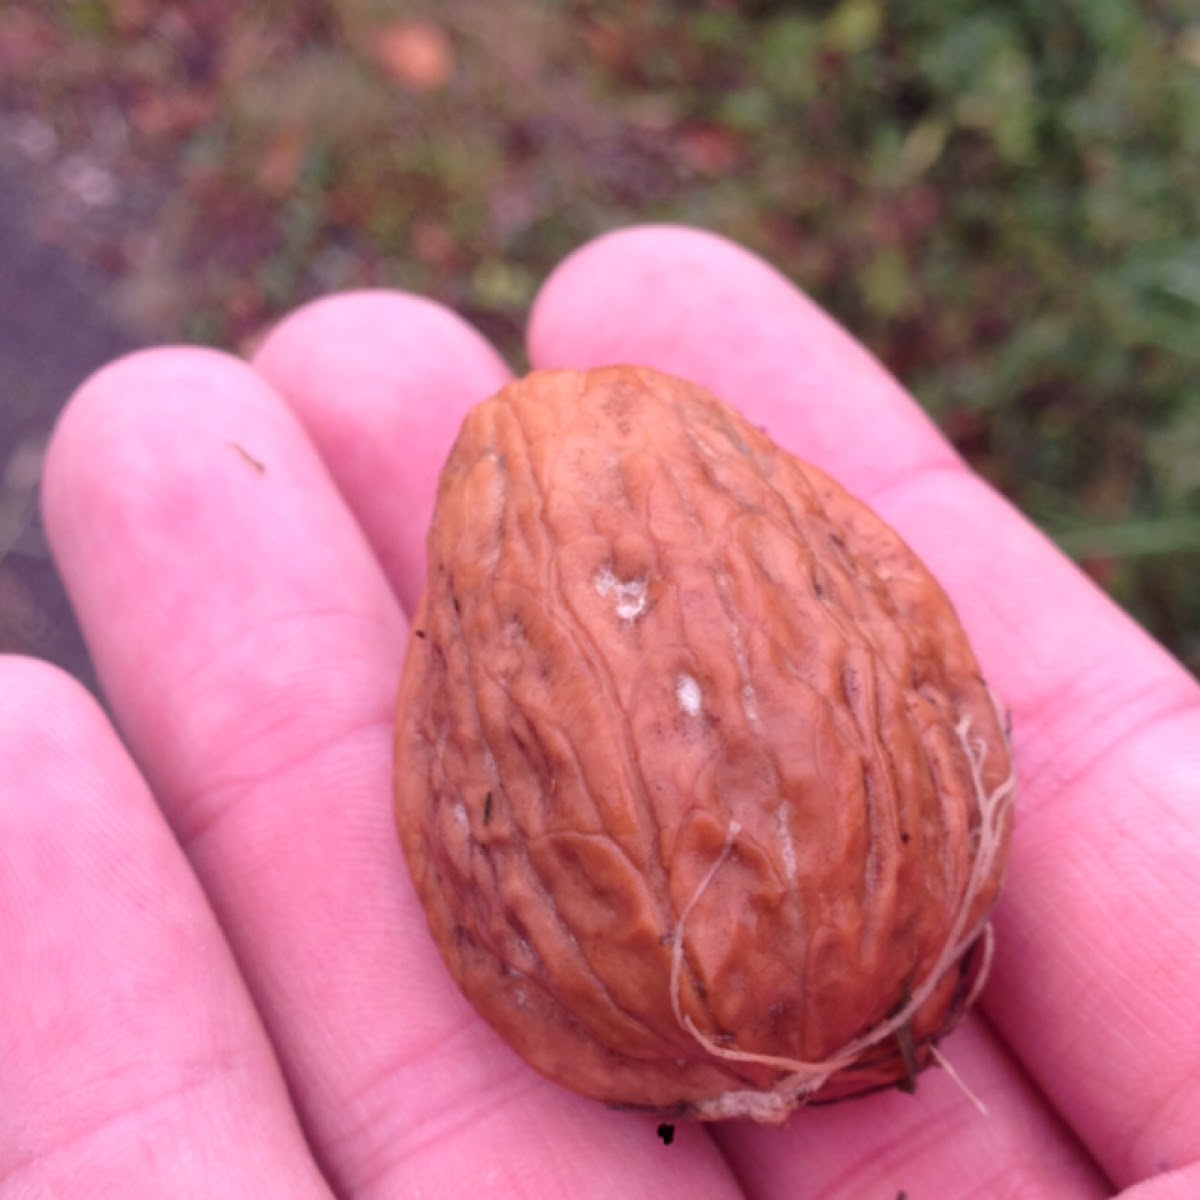 Wild walnut